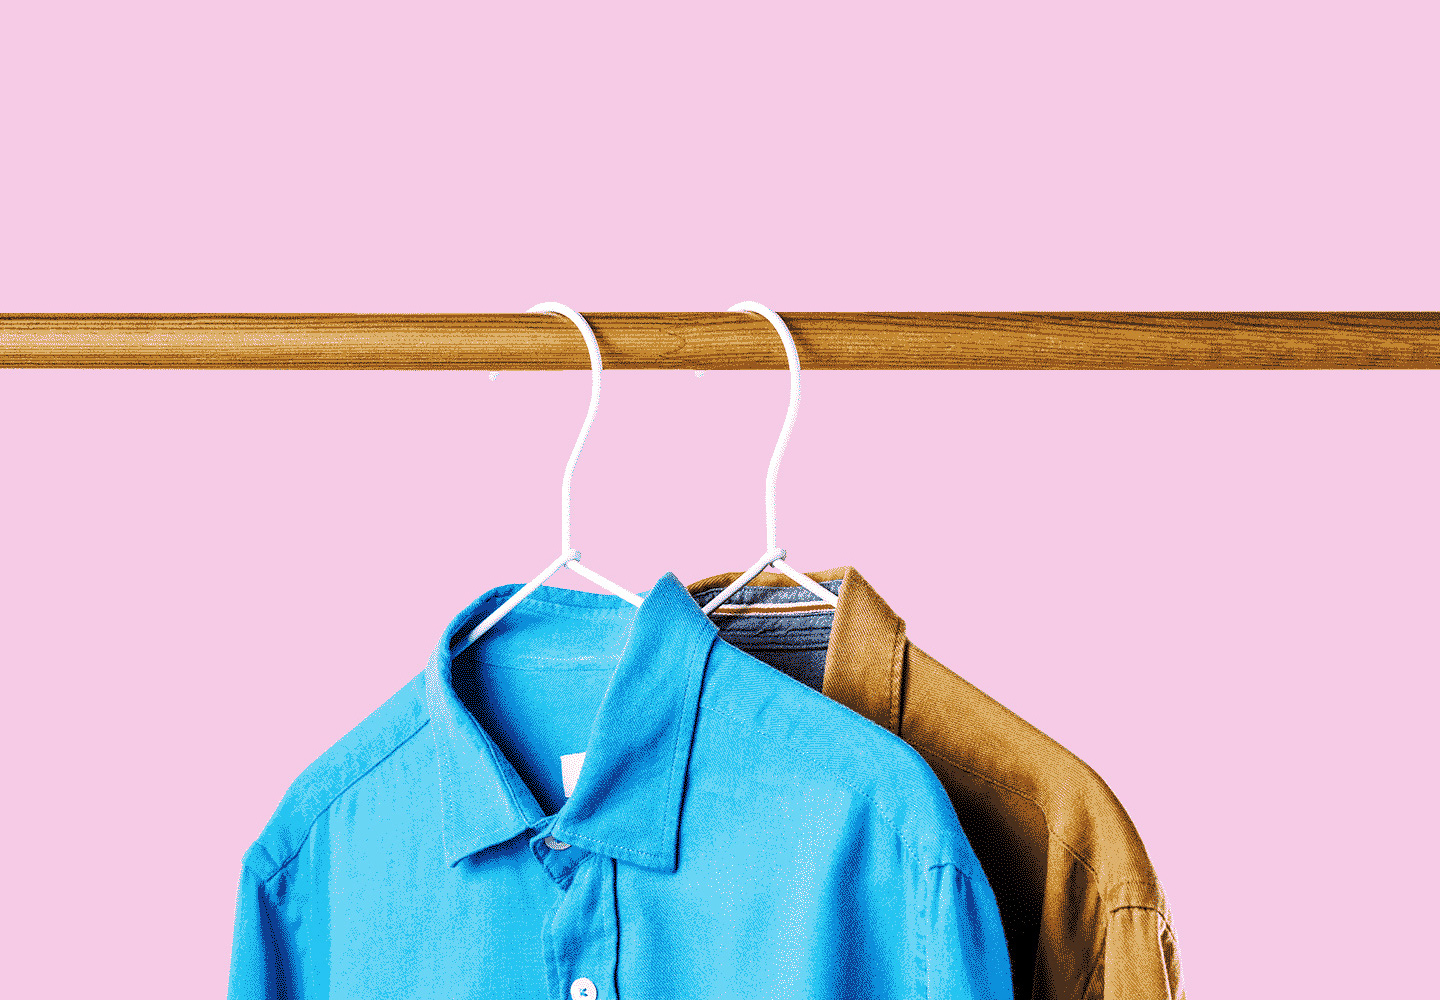 5 способов избавиться от надоевшей одежды с выгодой